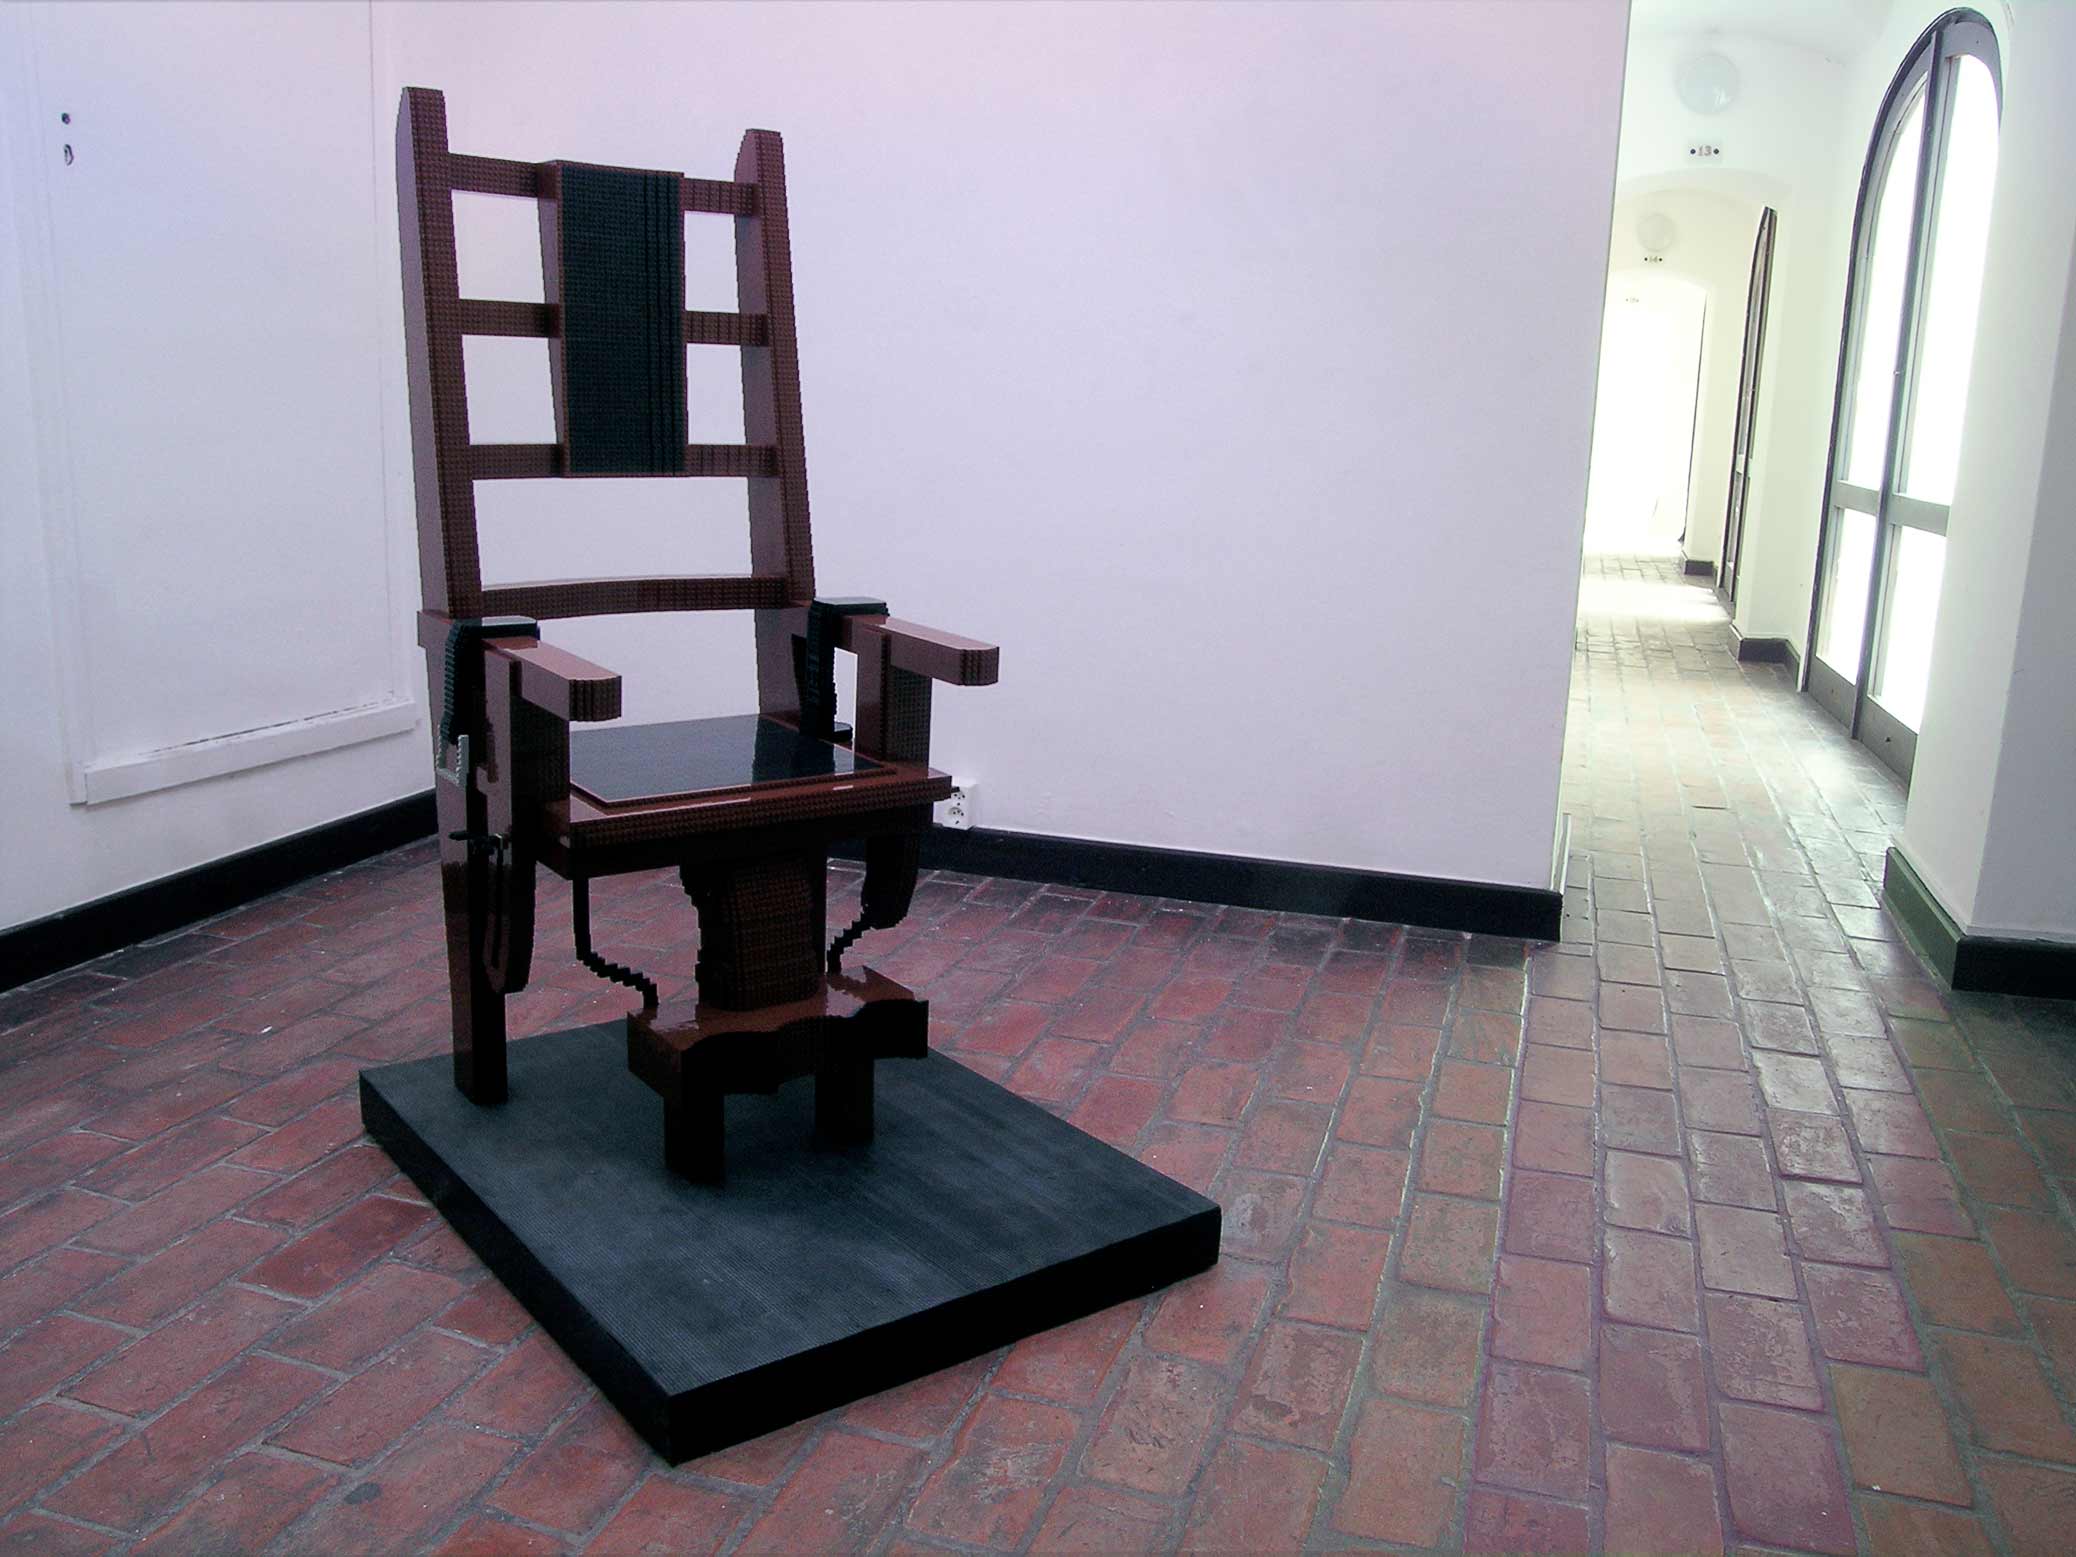 Electric Chair, sculpture made from LEGO, at Budapest Galéria Kiálítóháza.